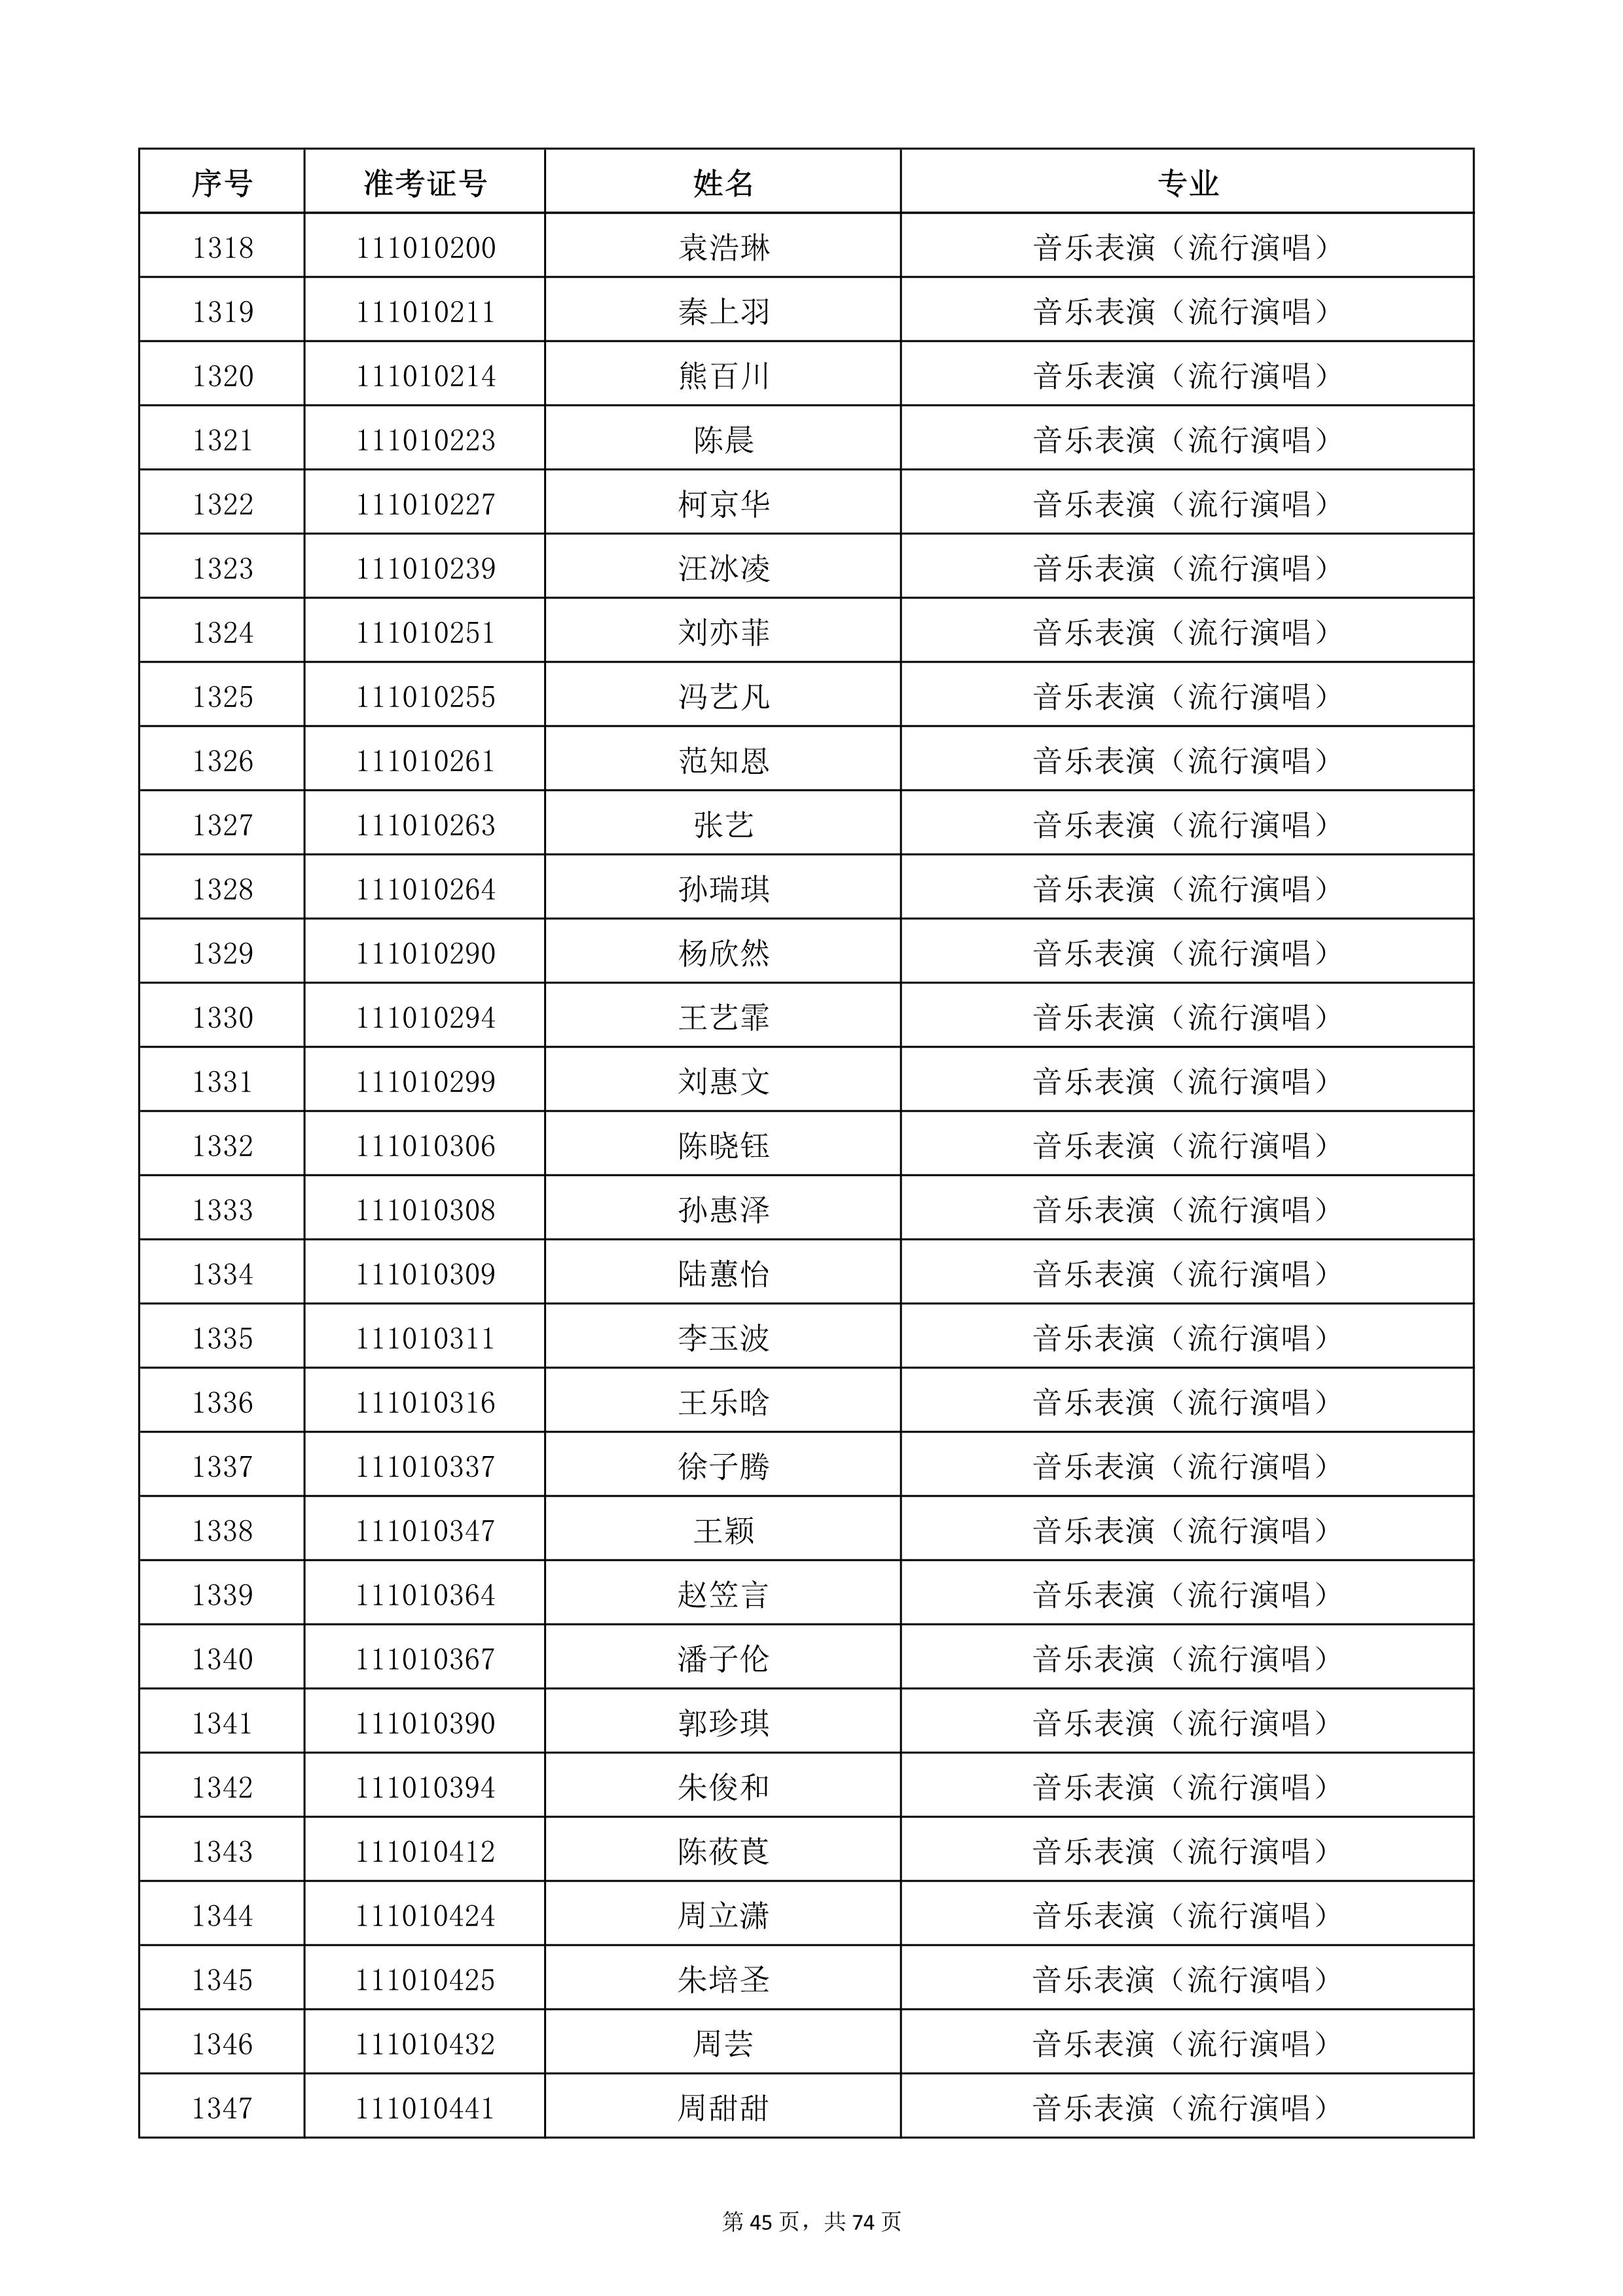 天津音乐学院2022年本科招生考试复试名单_45.jpg